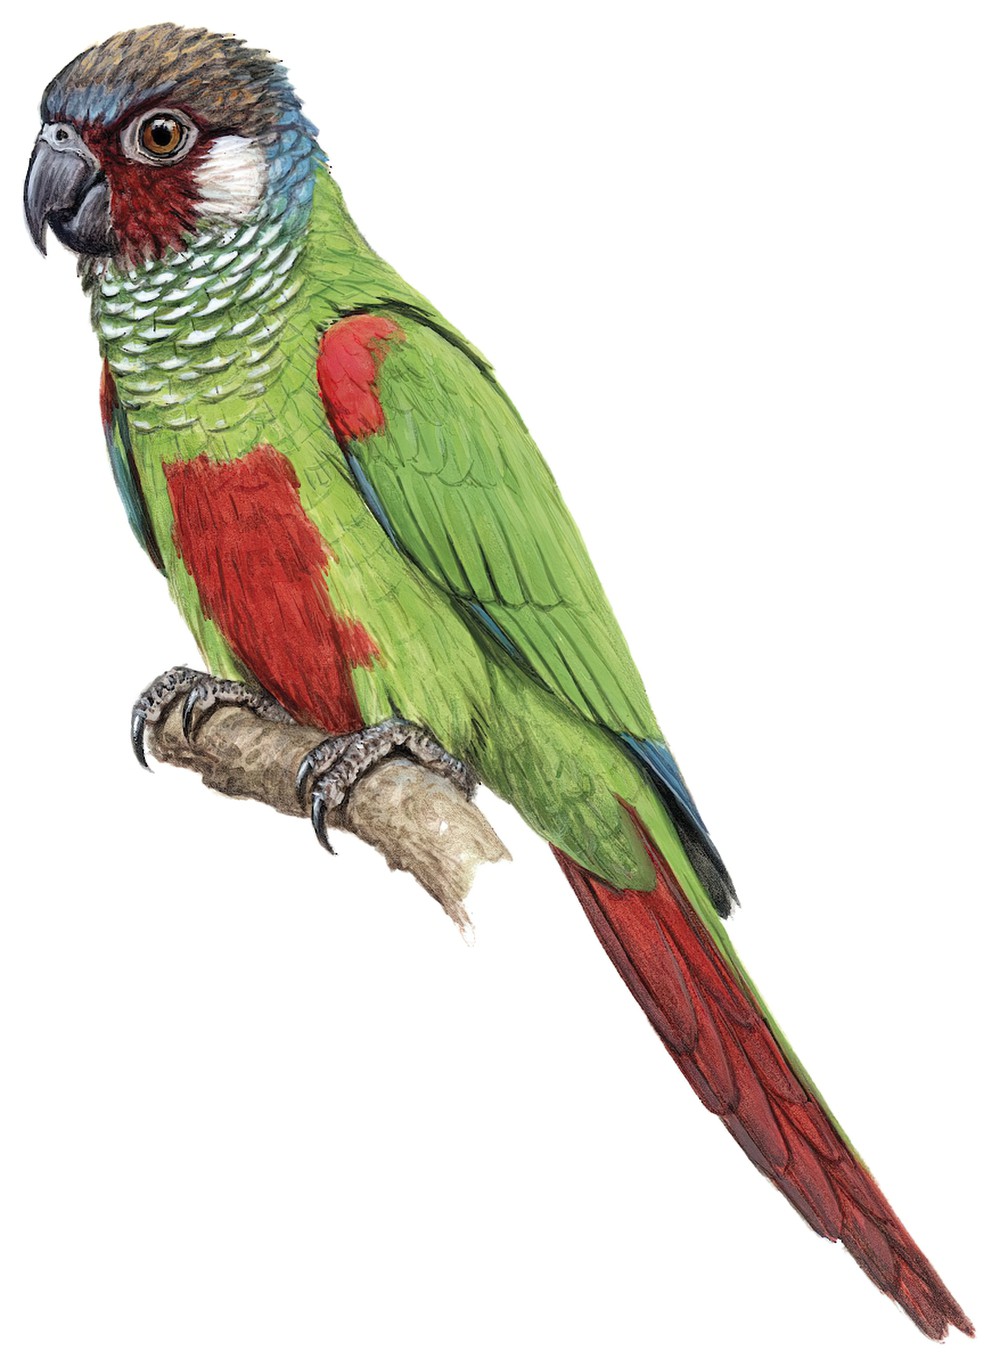 Maroon-faced Parakeet / Pyrrhura leucotis